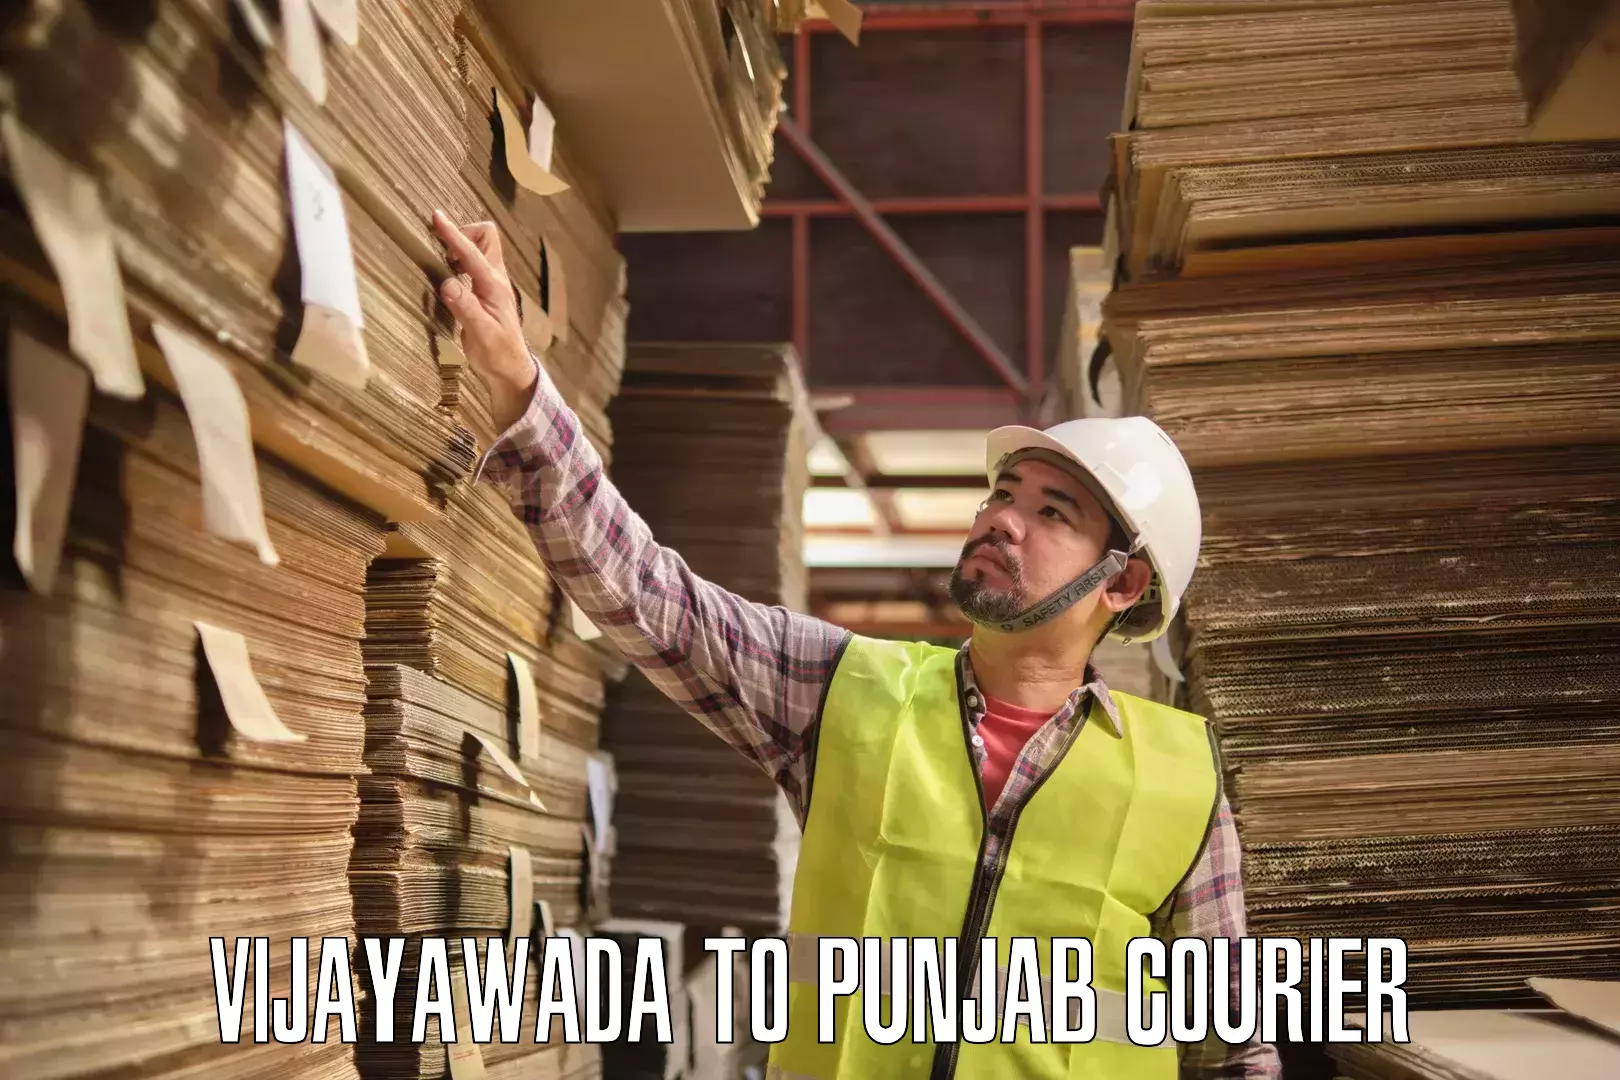 Next-generation courier services Vijayawada to Punjab